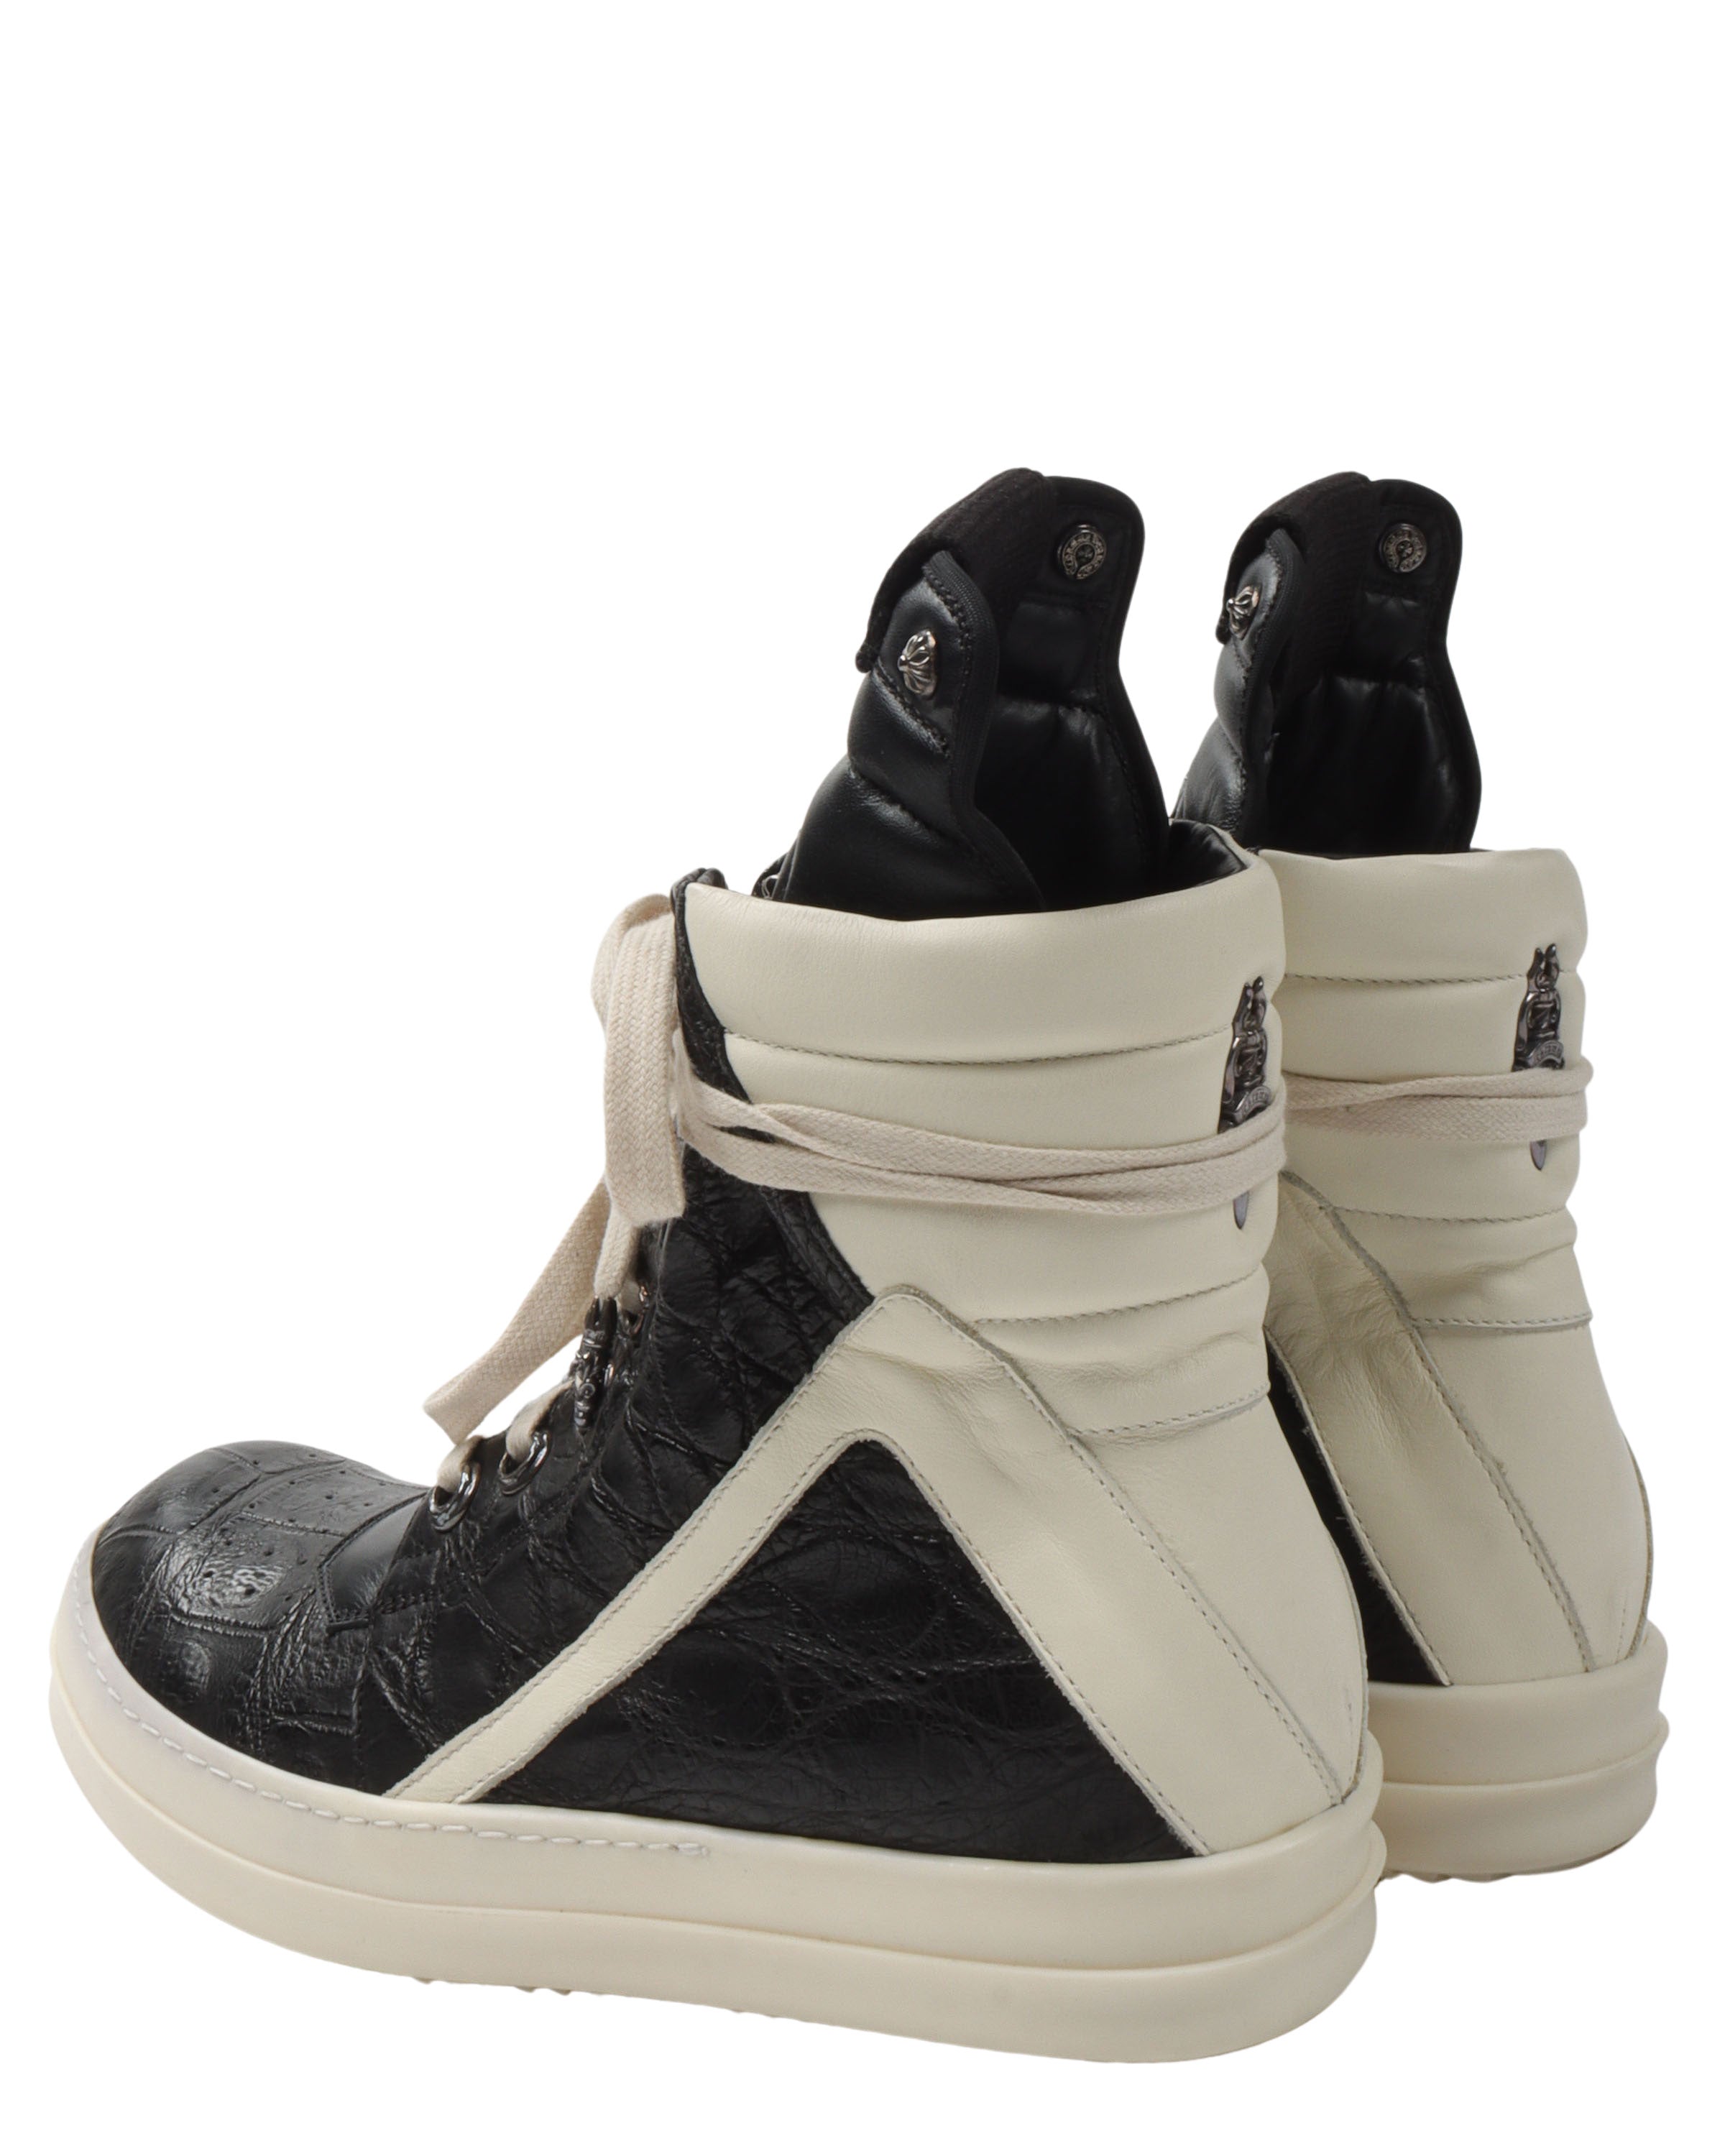 Rick Owens Crocodile Leather Geobasket Sneakers